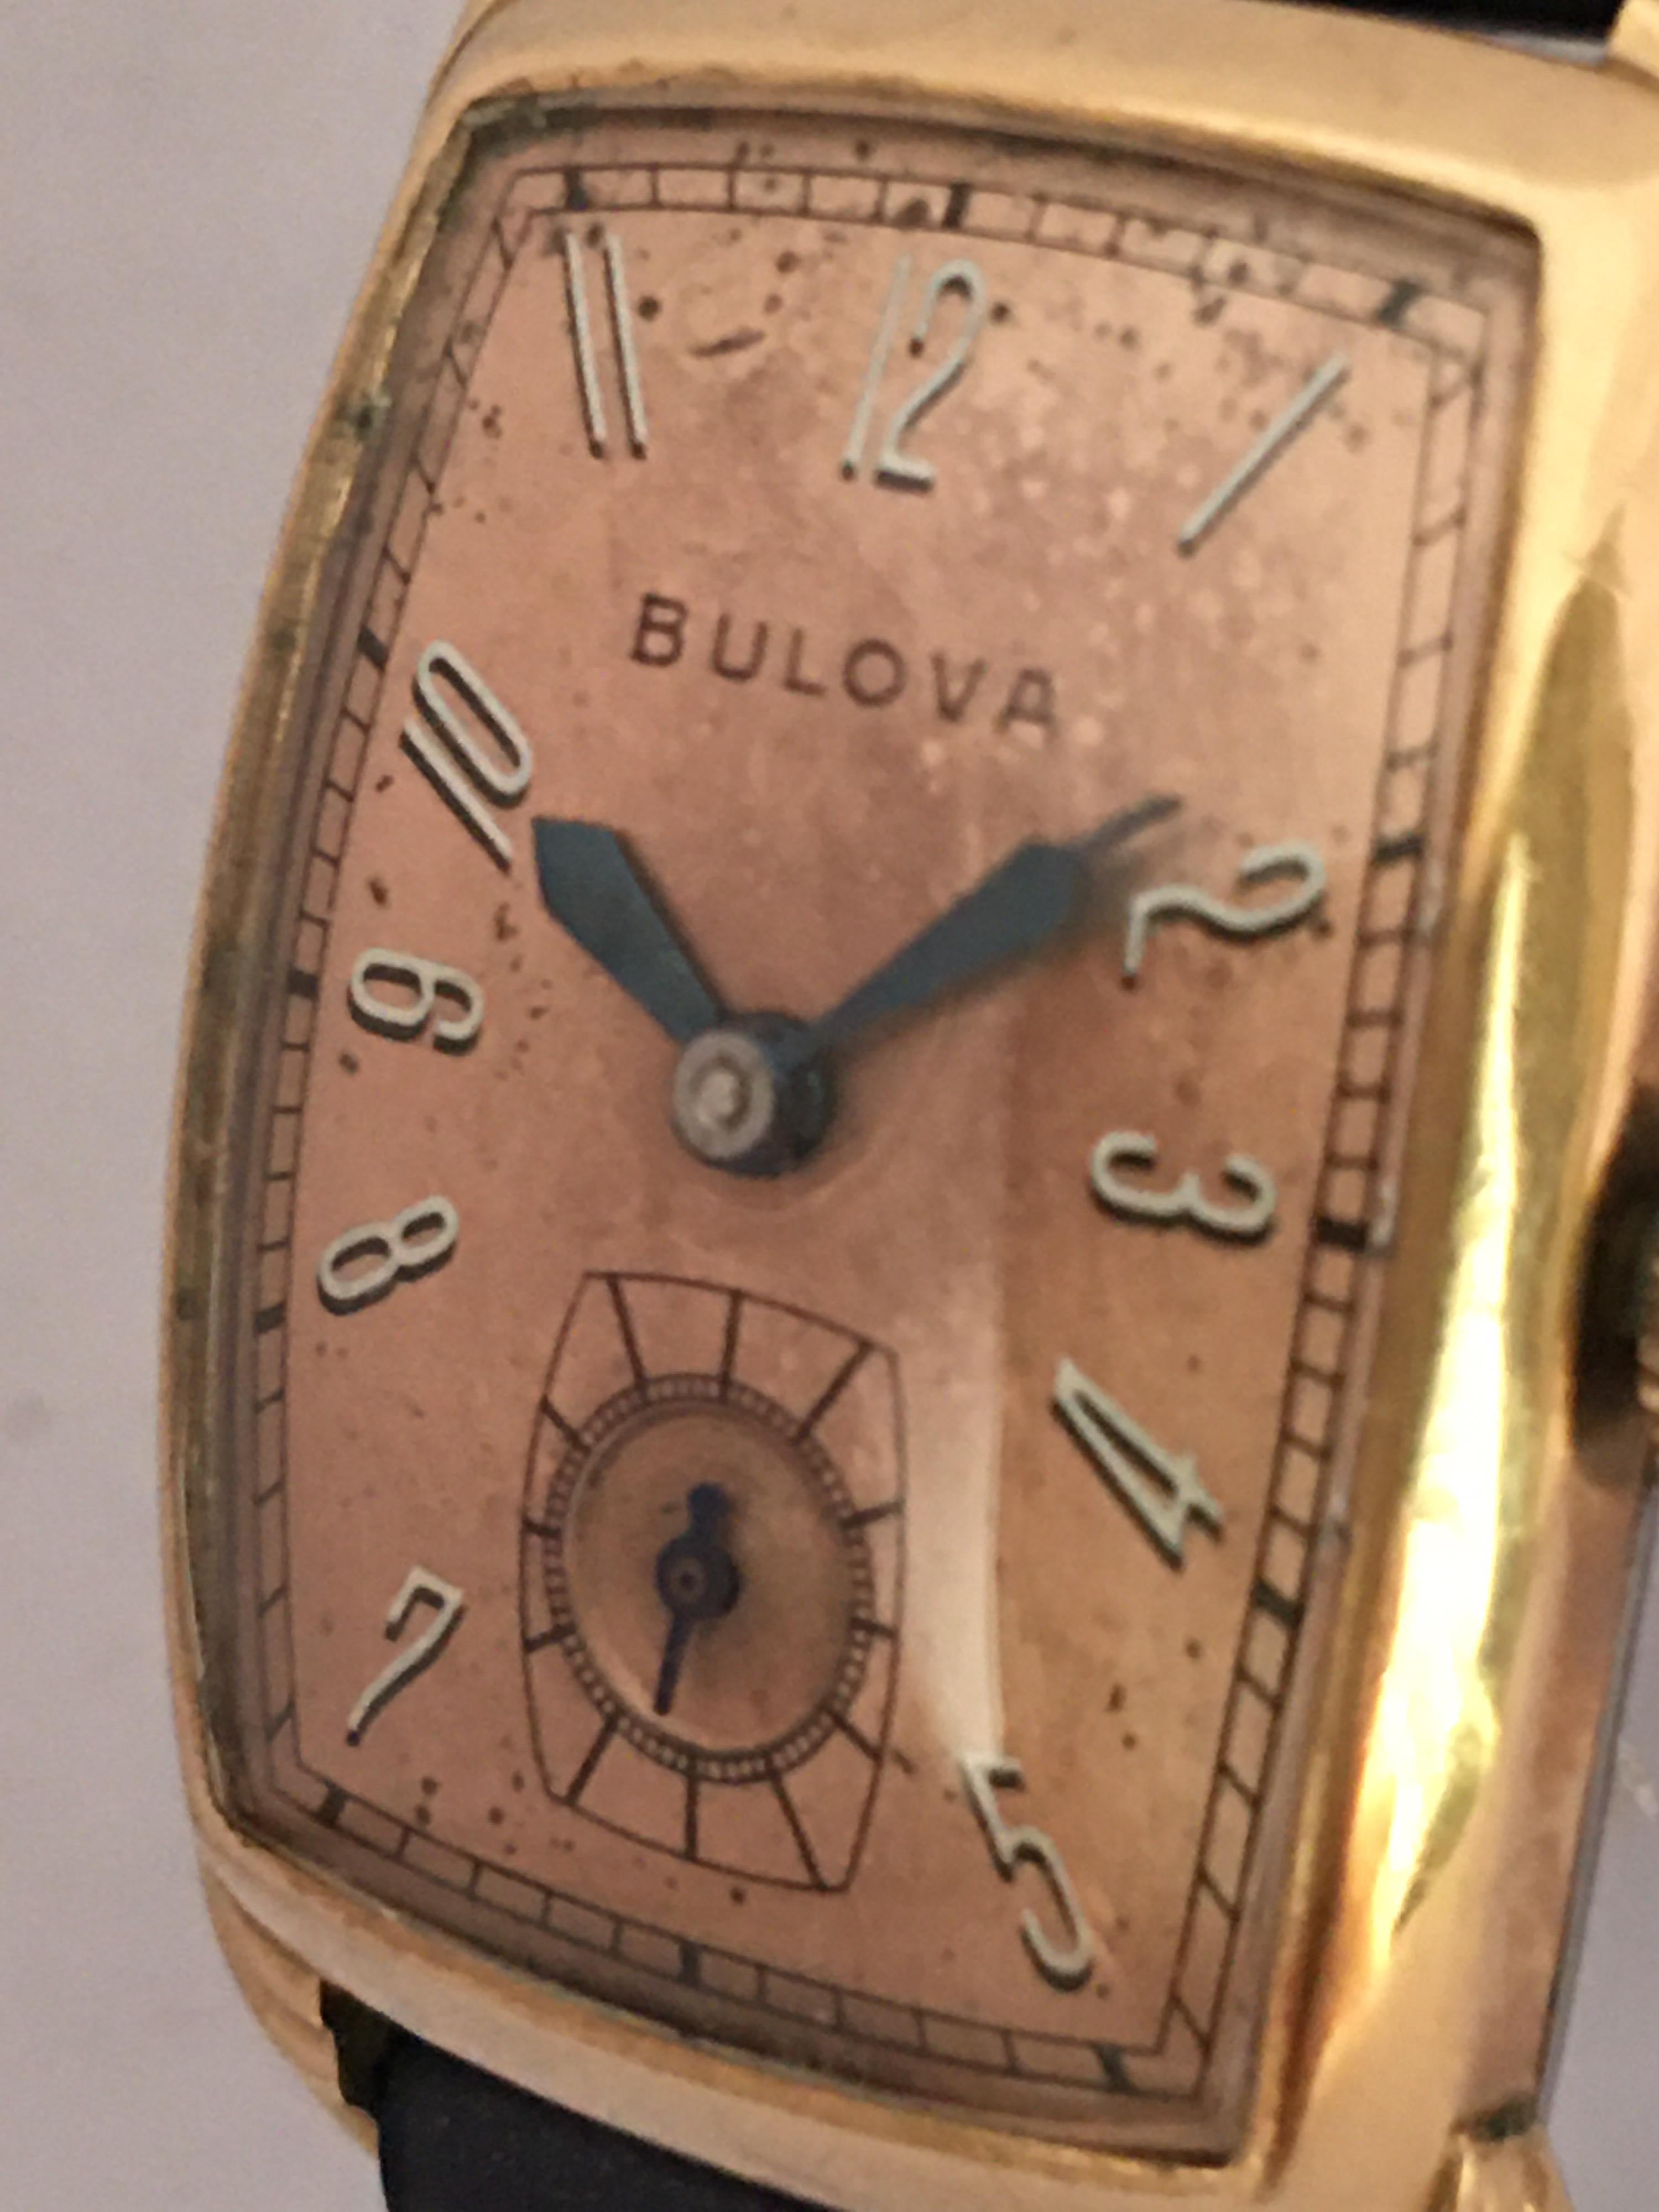 bulova rectangle watch